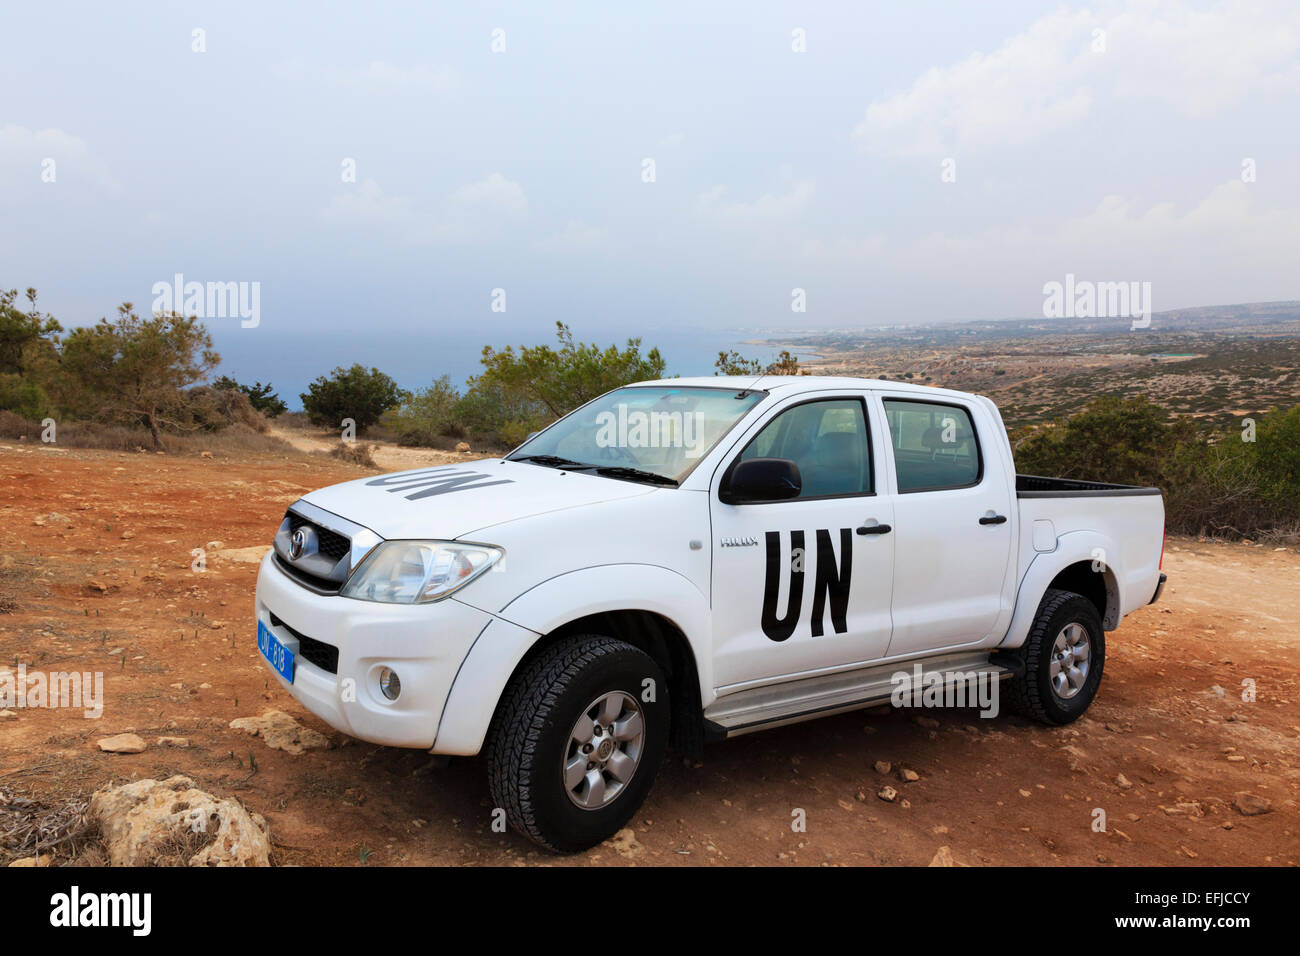 Toyota von den Vereinten Nationen Friedenssicherung Kraft mit Sitz in Zypern am Kap Greco Stockfoto